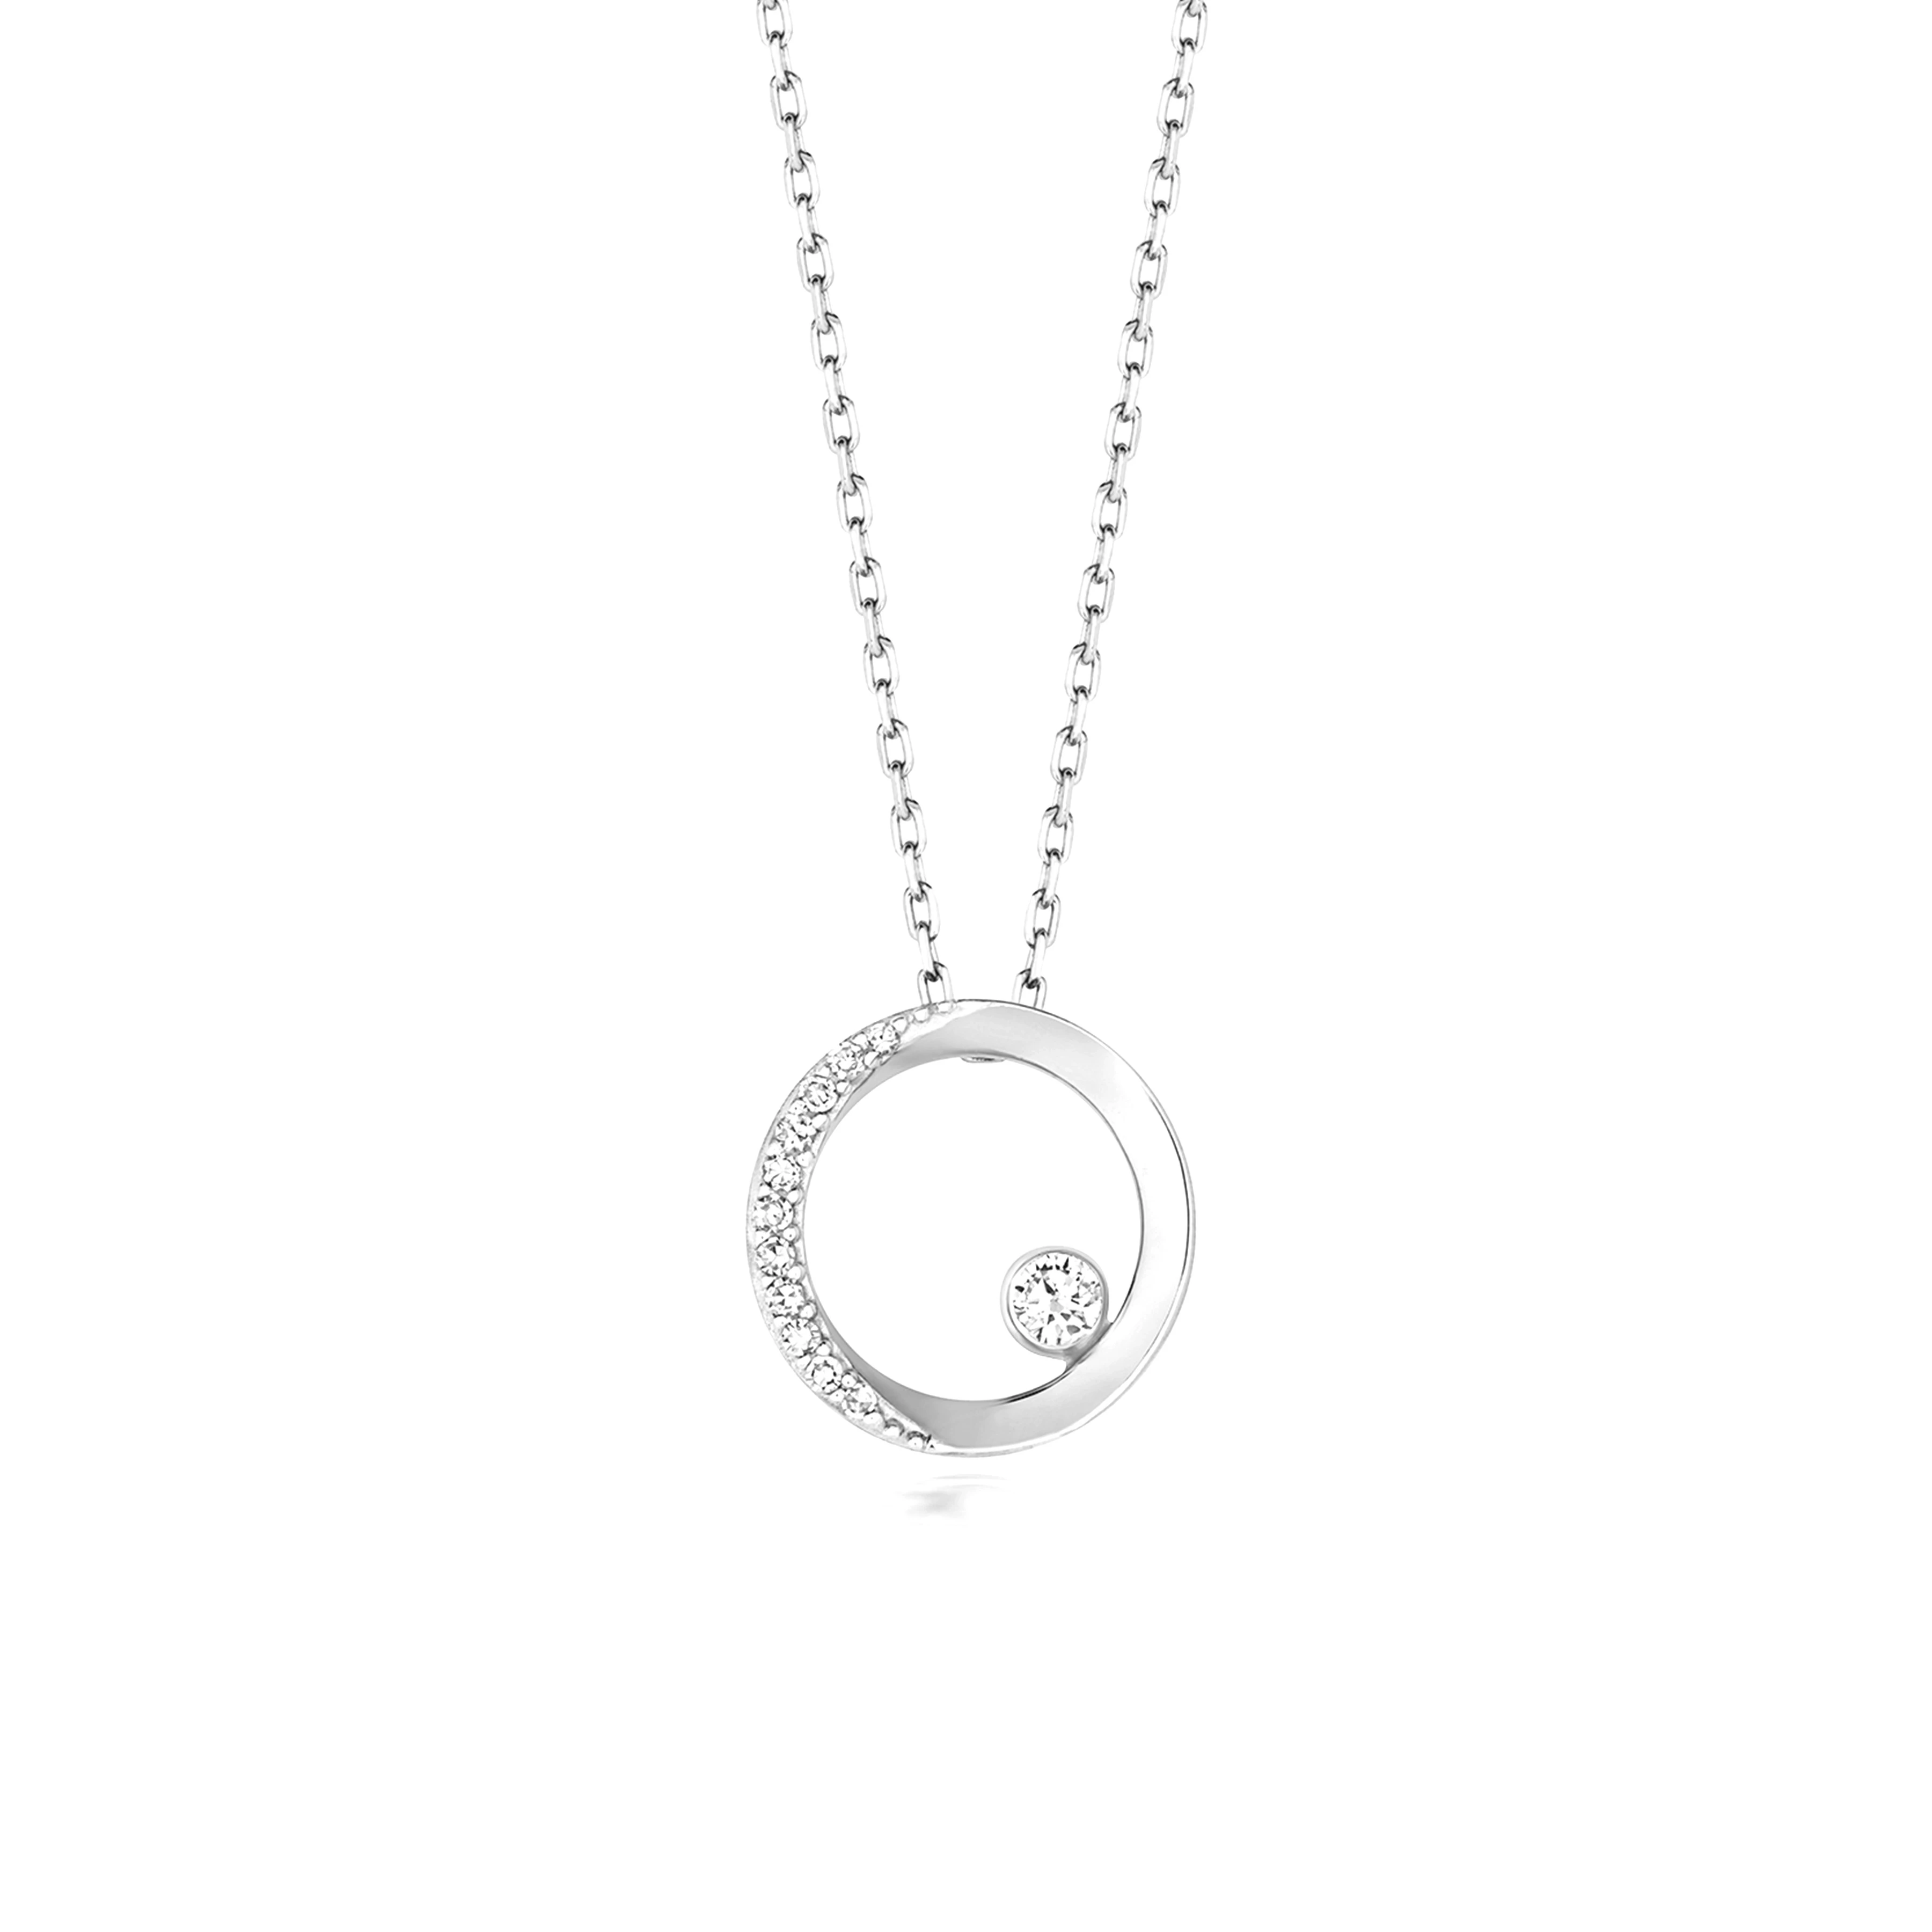 bezel setting circle shaped round diamond pendant necklace